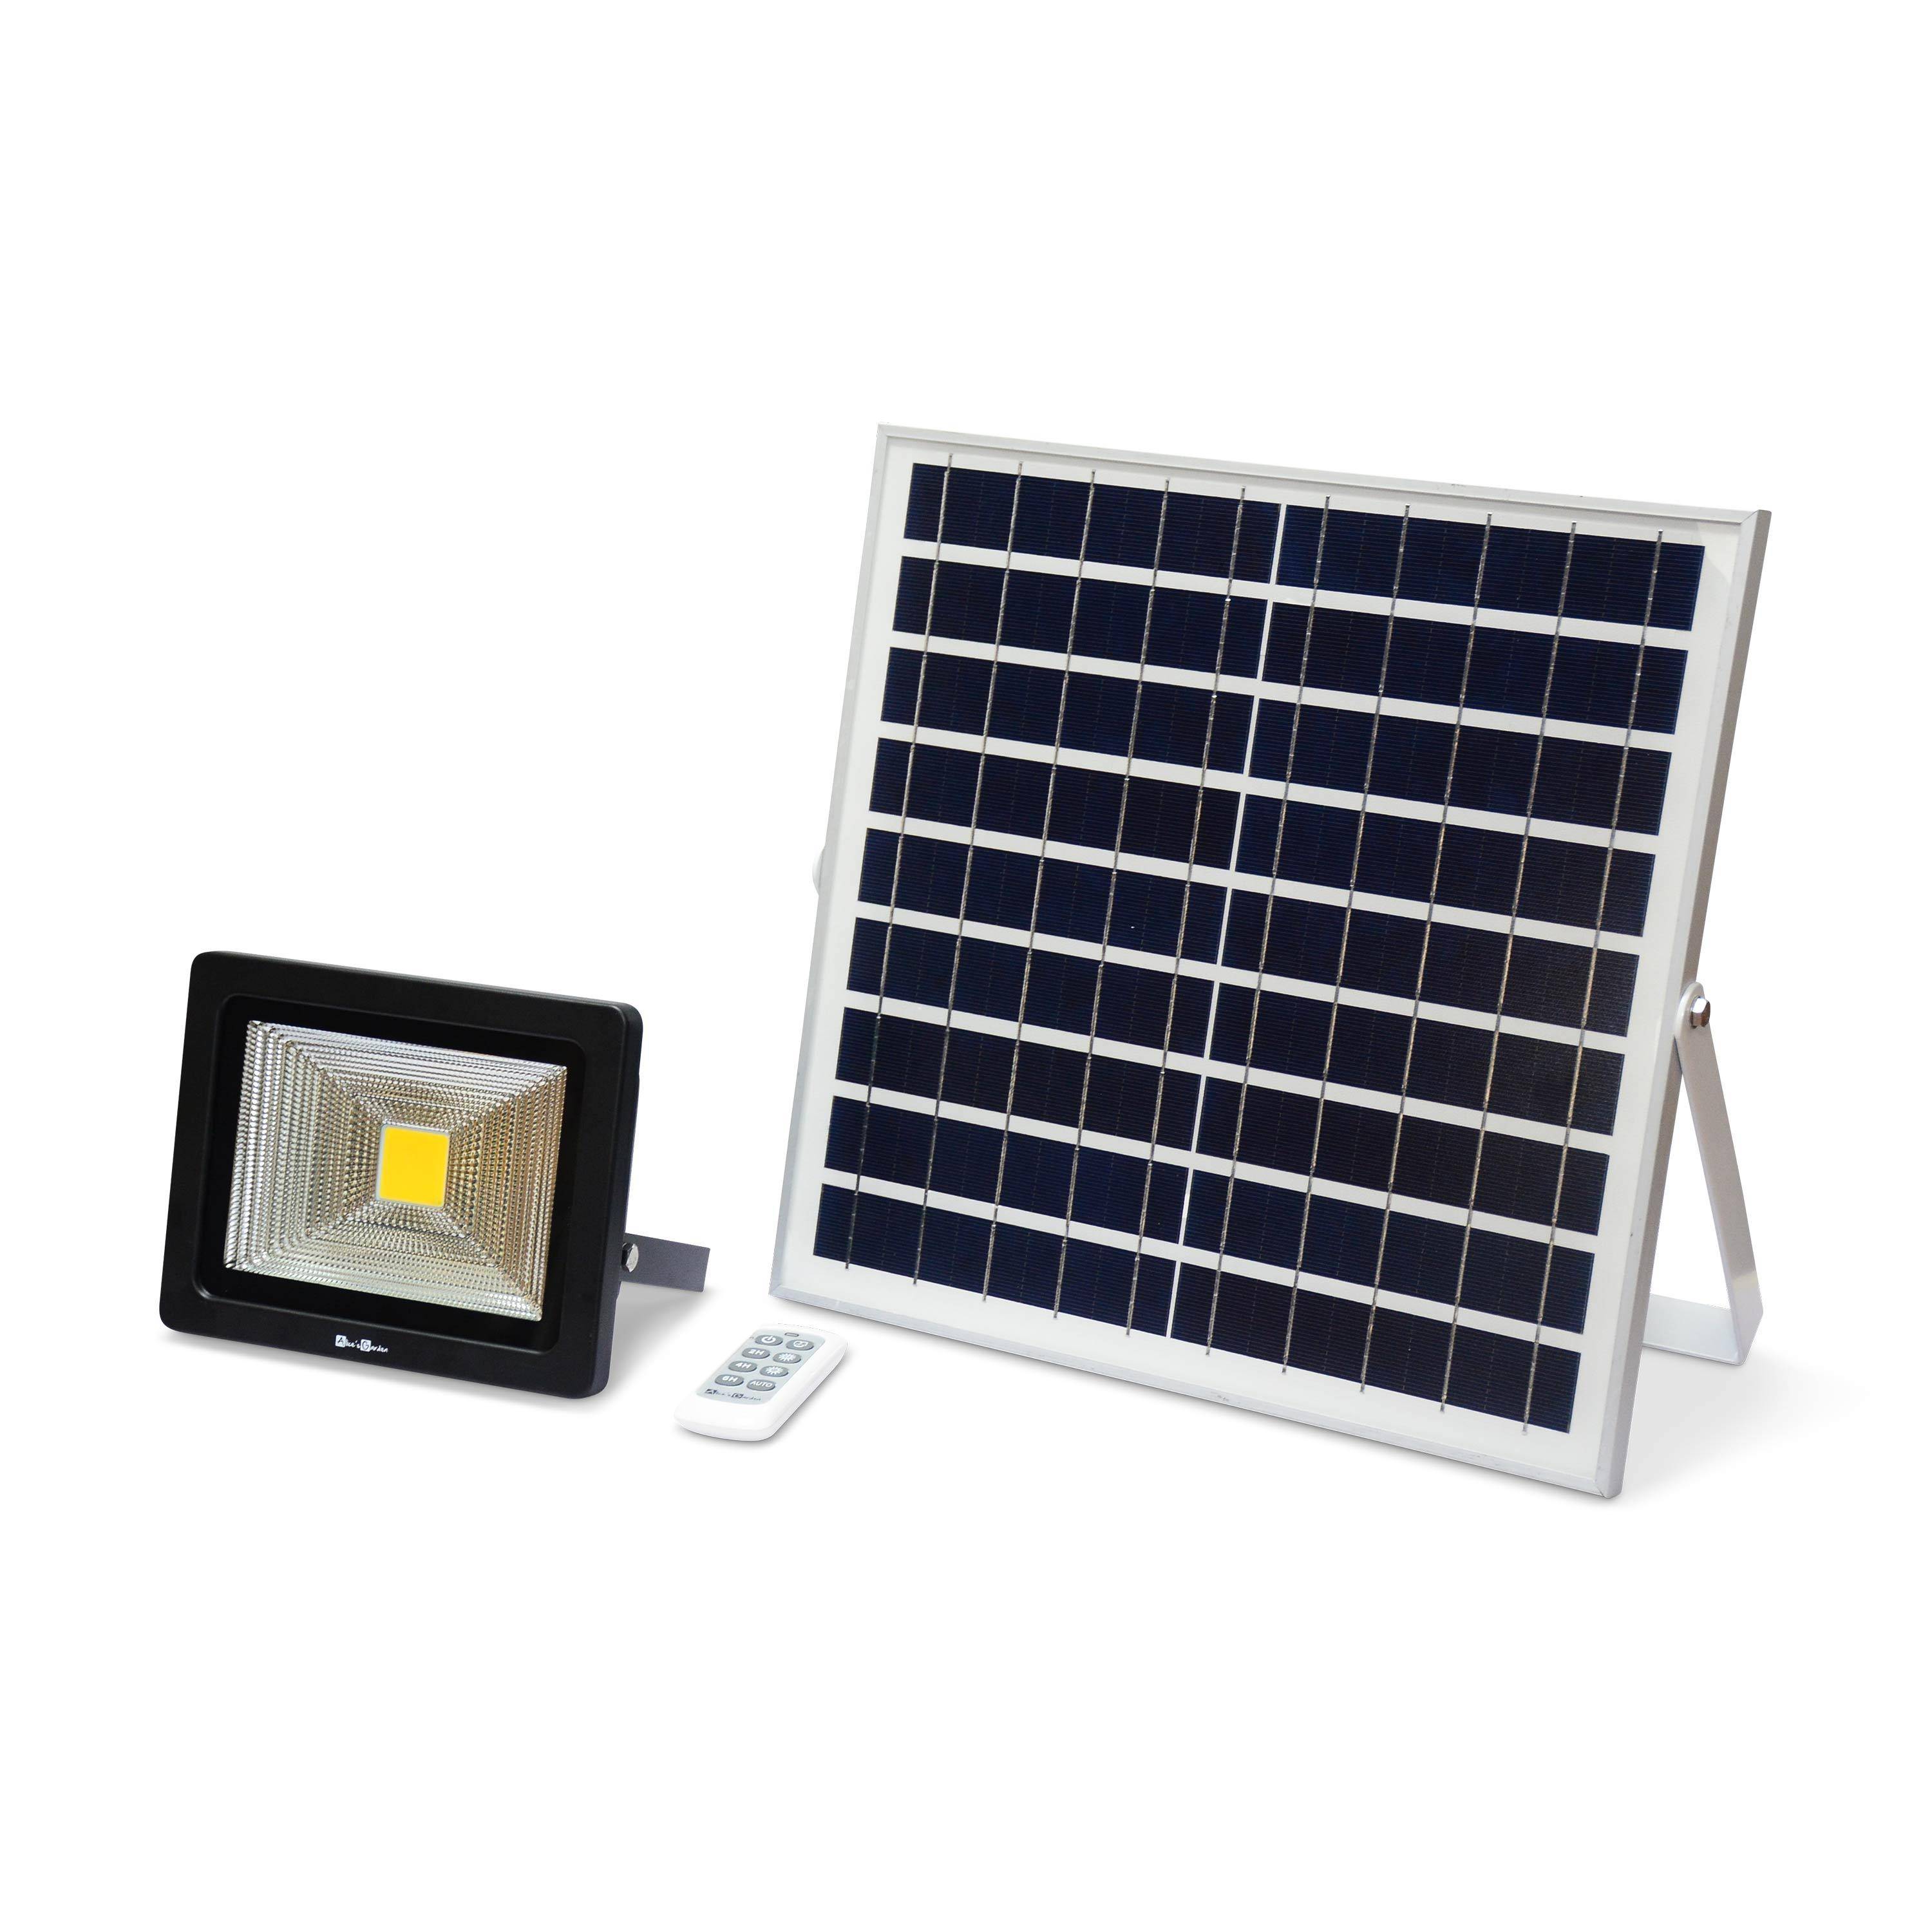 Projecteur solaire LED 20W avec panneau solaire télécommandé blanc chaud, lampe résistante à la pluie et autonome, spot extra puissant 2400 lumens équivalent 150W Photo1